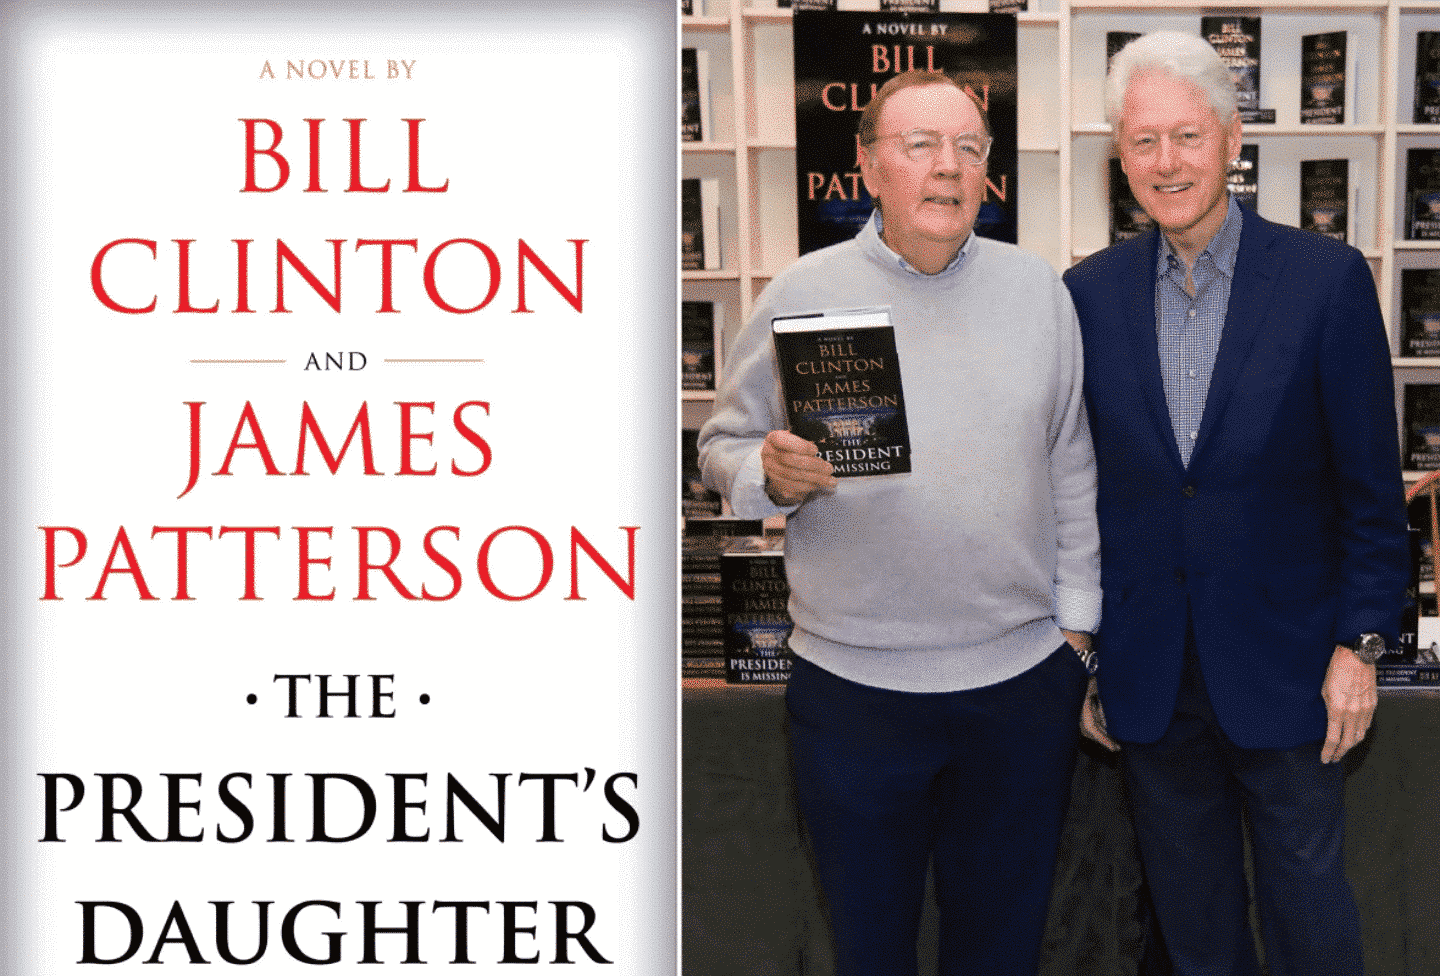 يعمل بيل كلينتون وجيمس باترسون على كتاب جديد 46